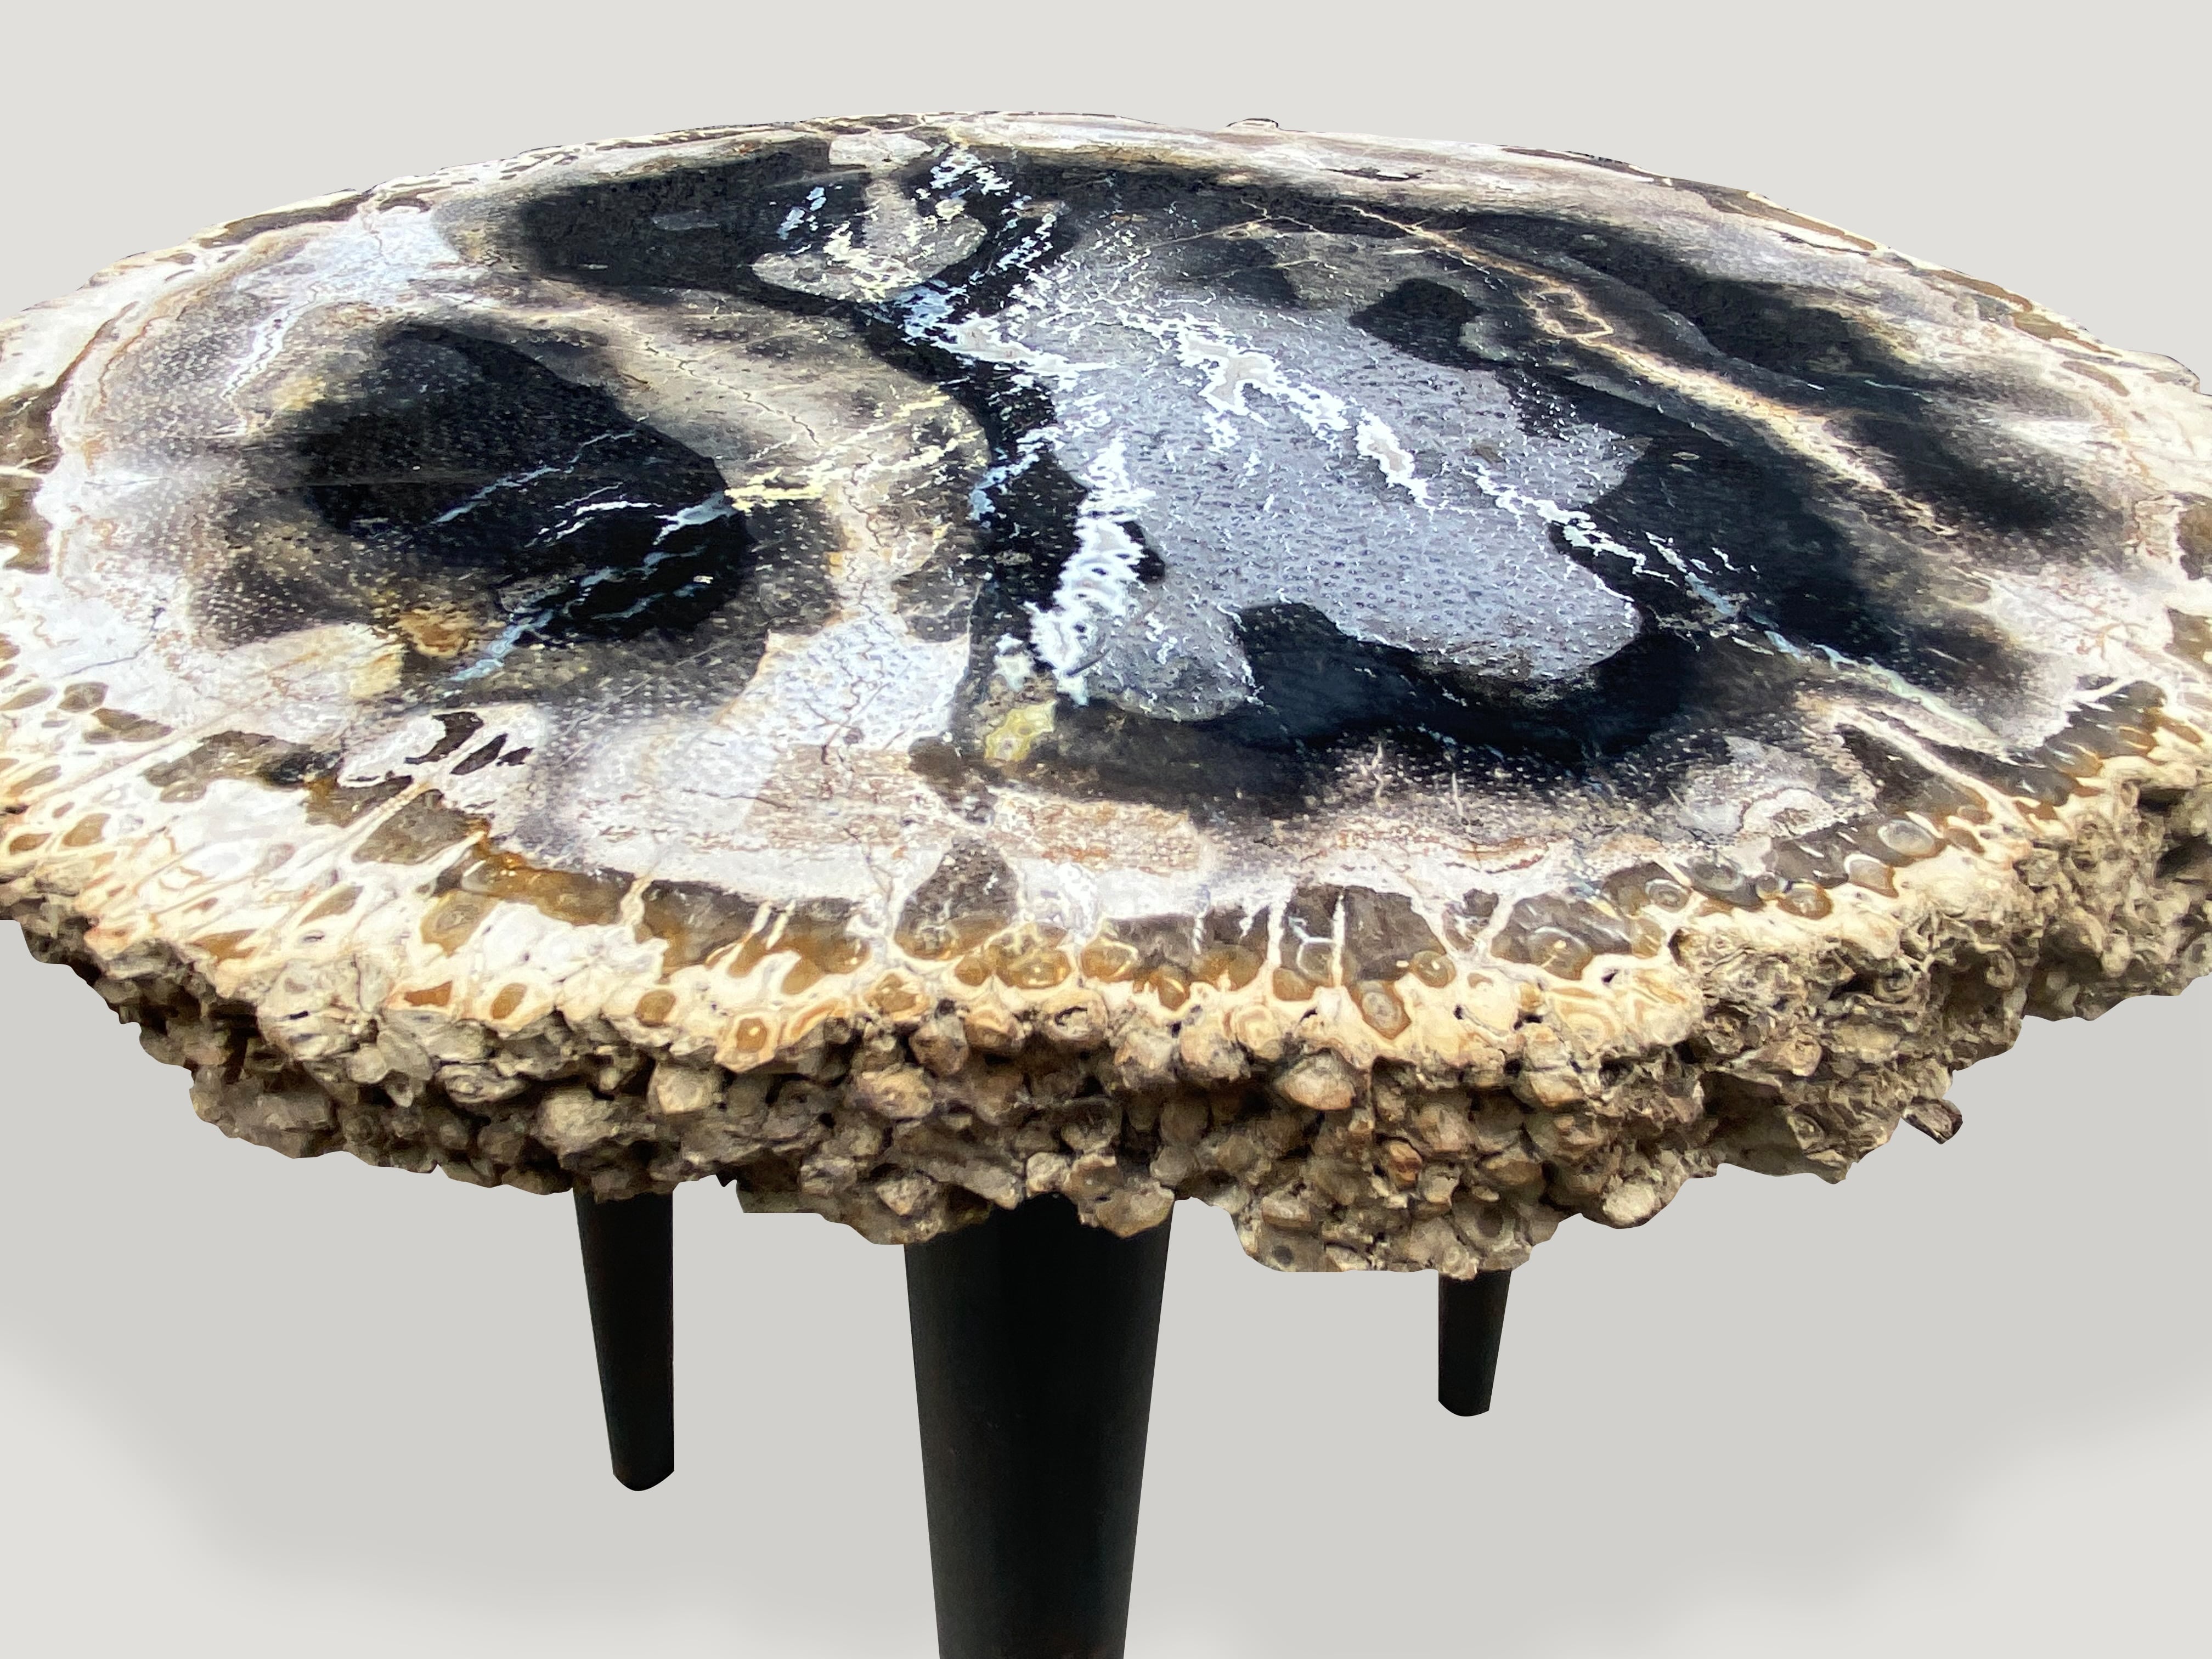 rare palm petrified wood side table